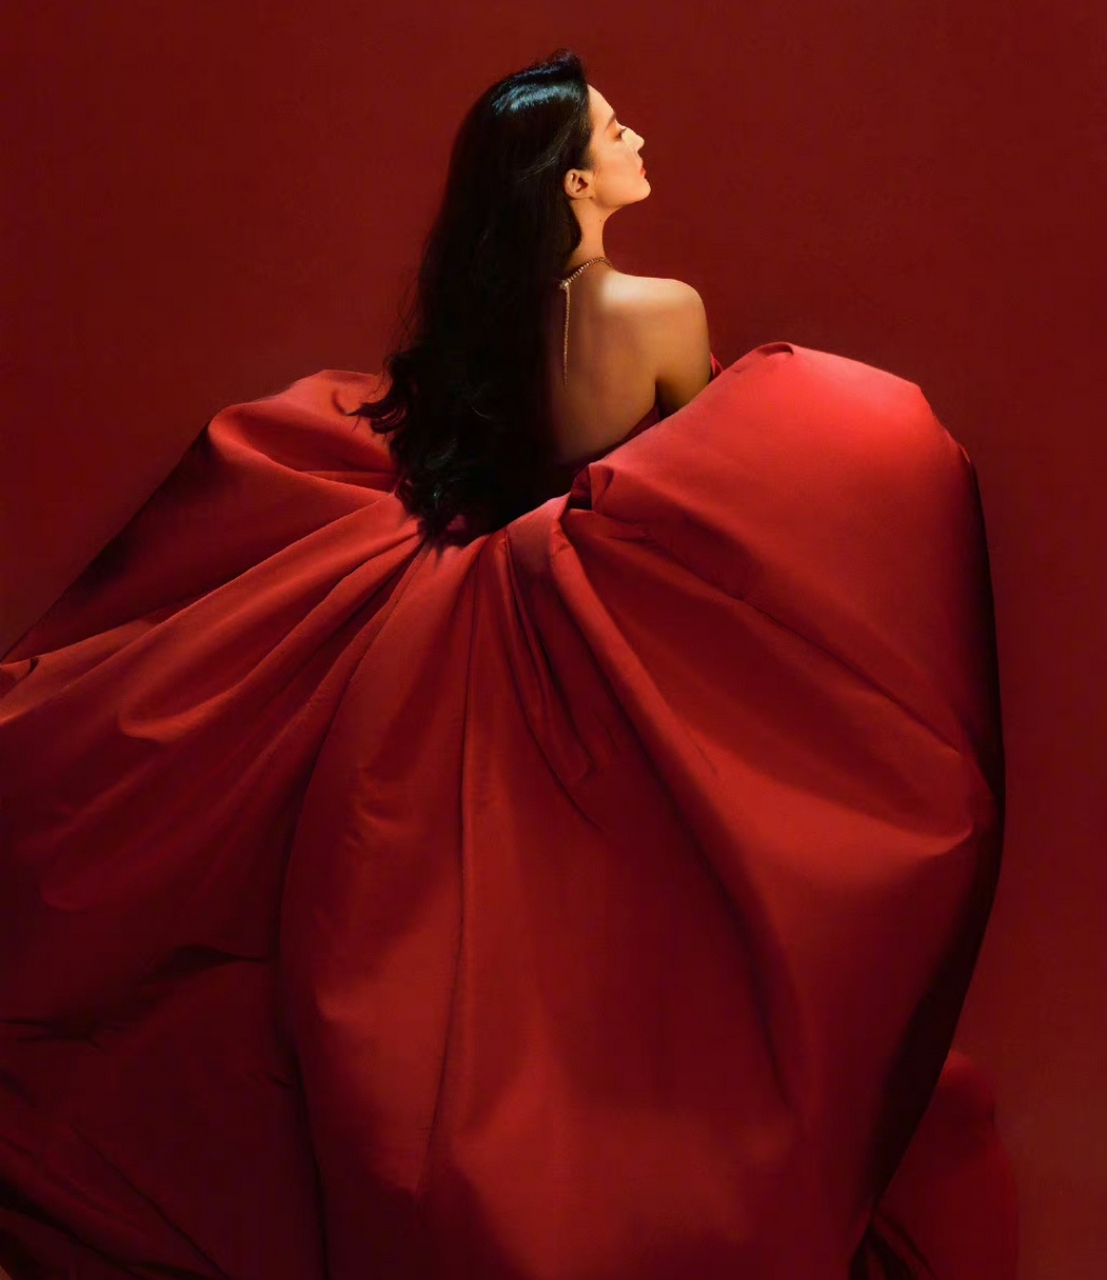 刘亦菲的杂志封面照太高级,红色礼服梦回花木兰时期,简单的场景却表现